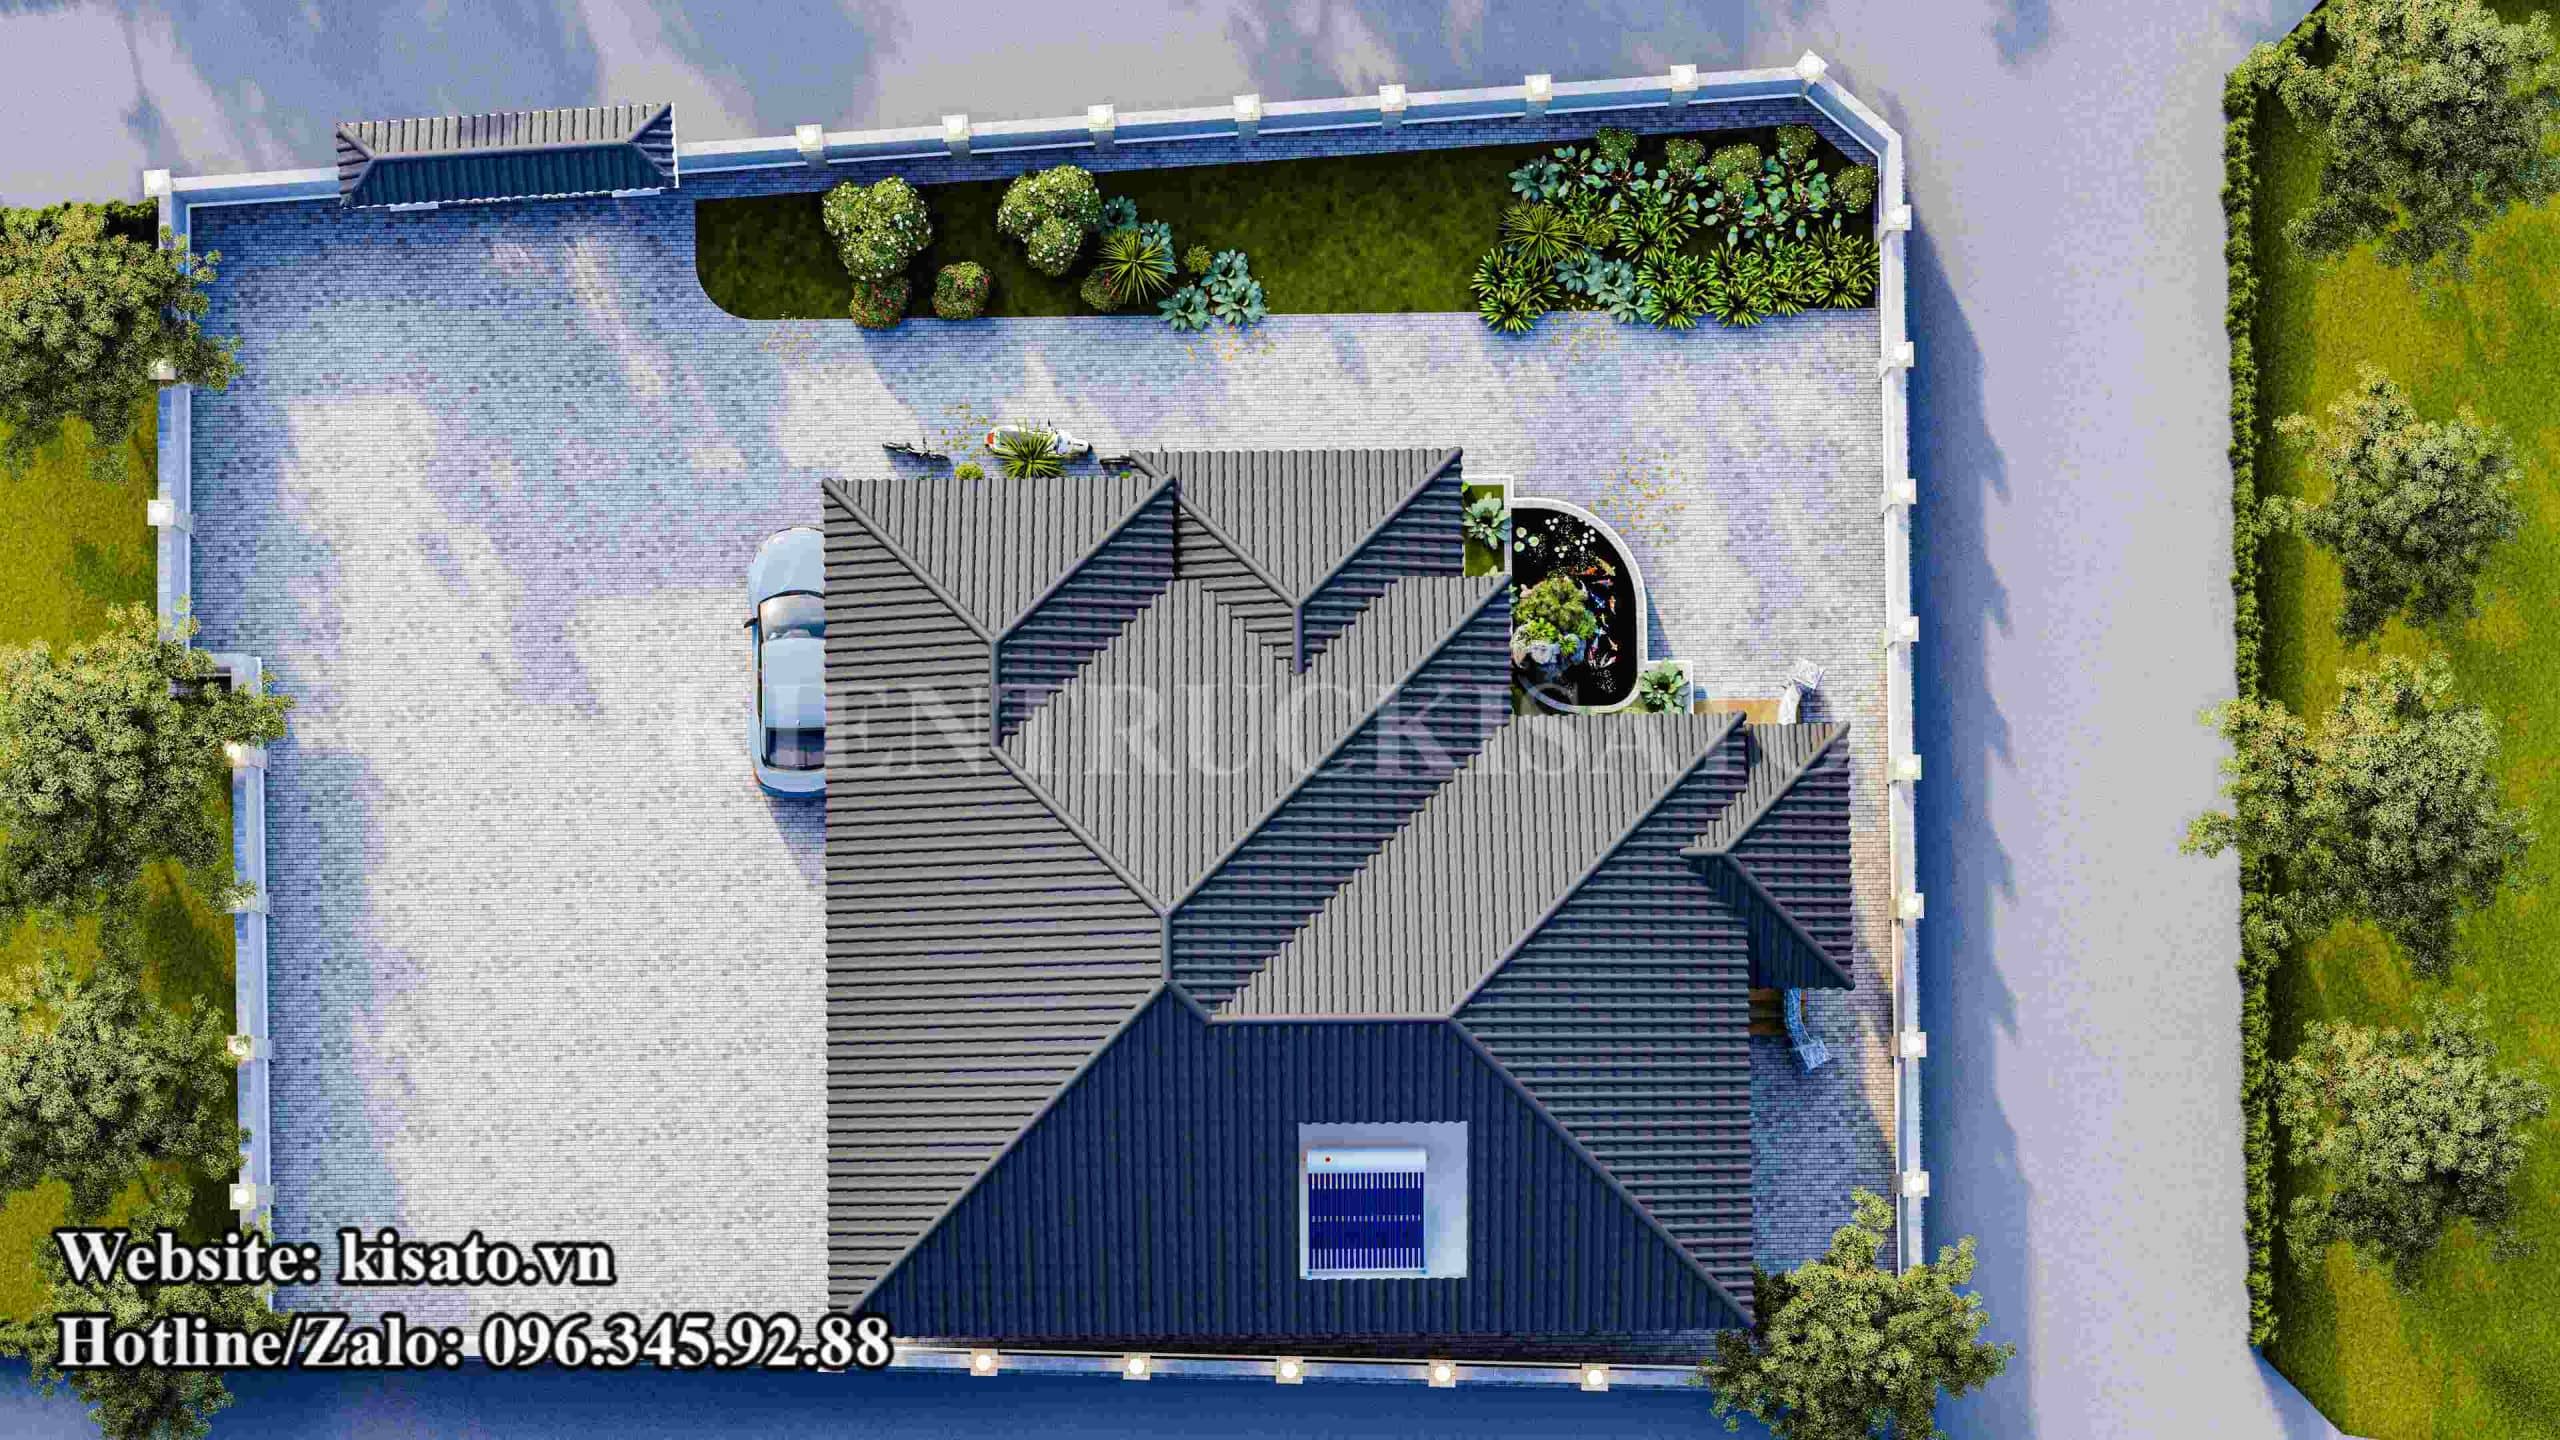 Mẫu thiết kế nhà cấp 4 mái Nhật đẹp tại Thanh Hóa nổi bật với không gian sân vườn được quy hoạch khoa học sạch sẽ